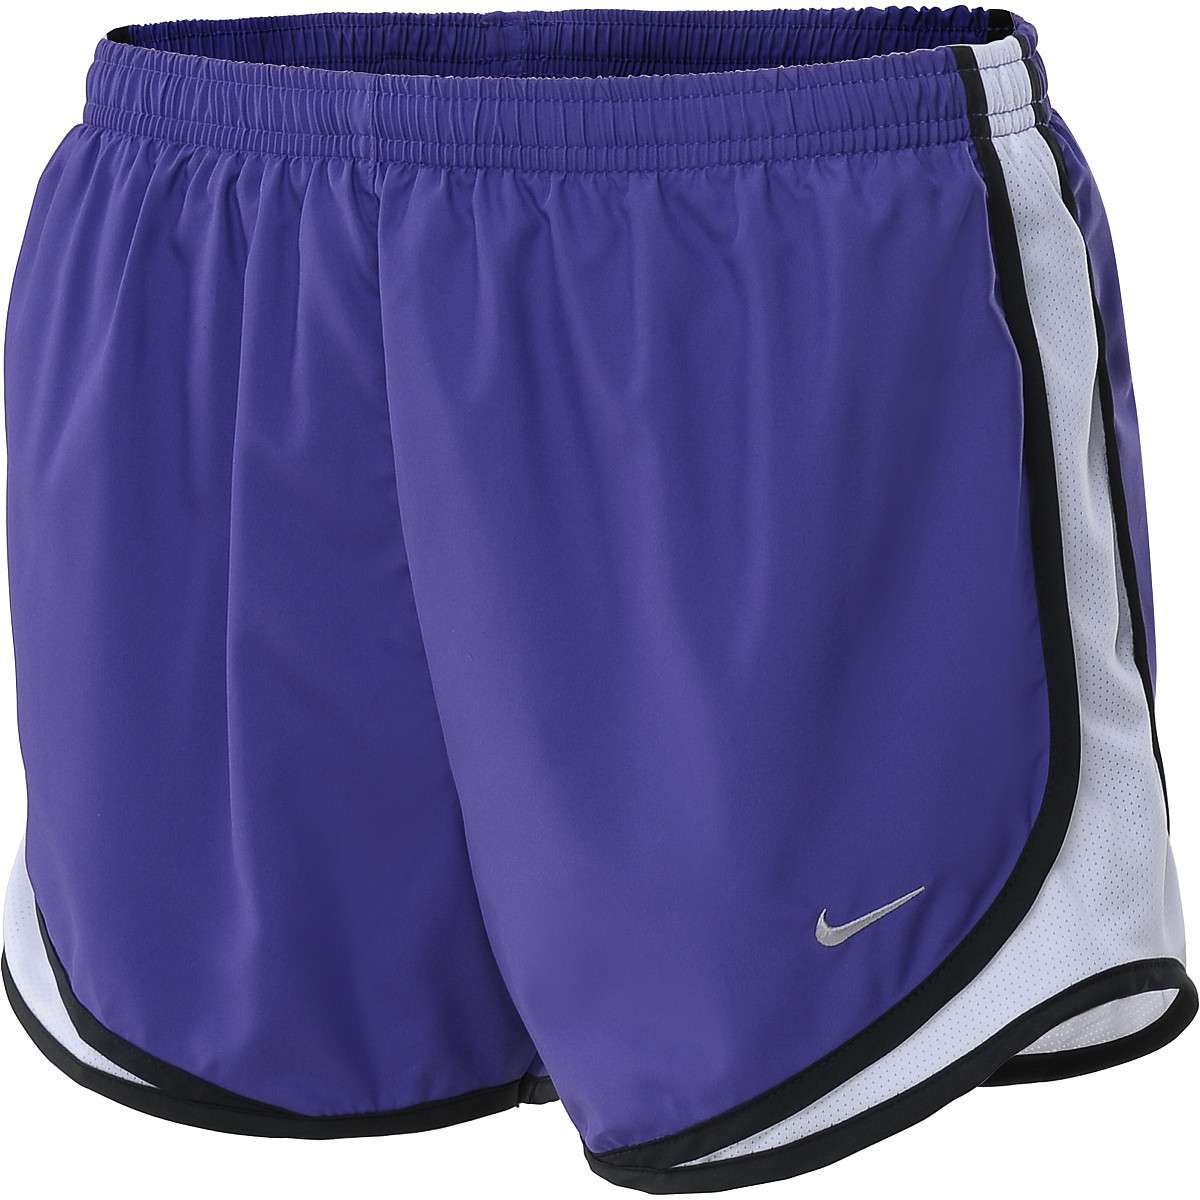 Nike women's shorts